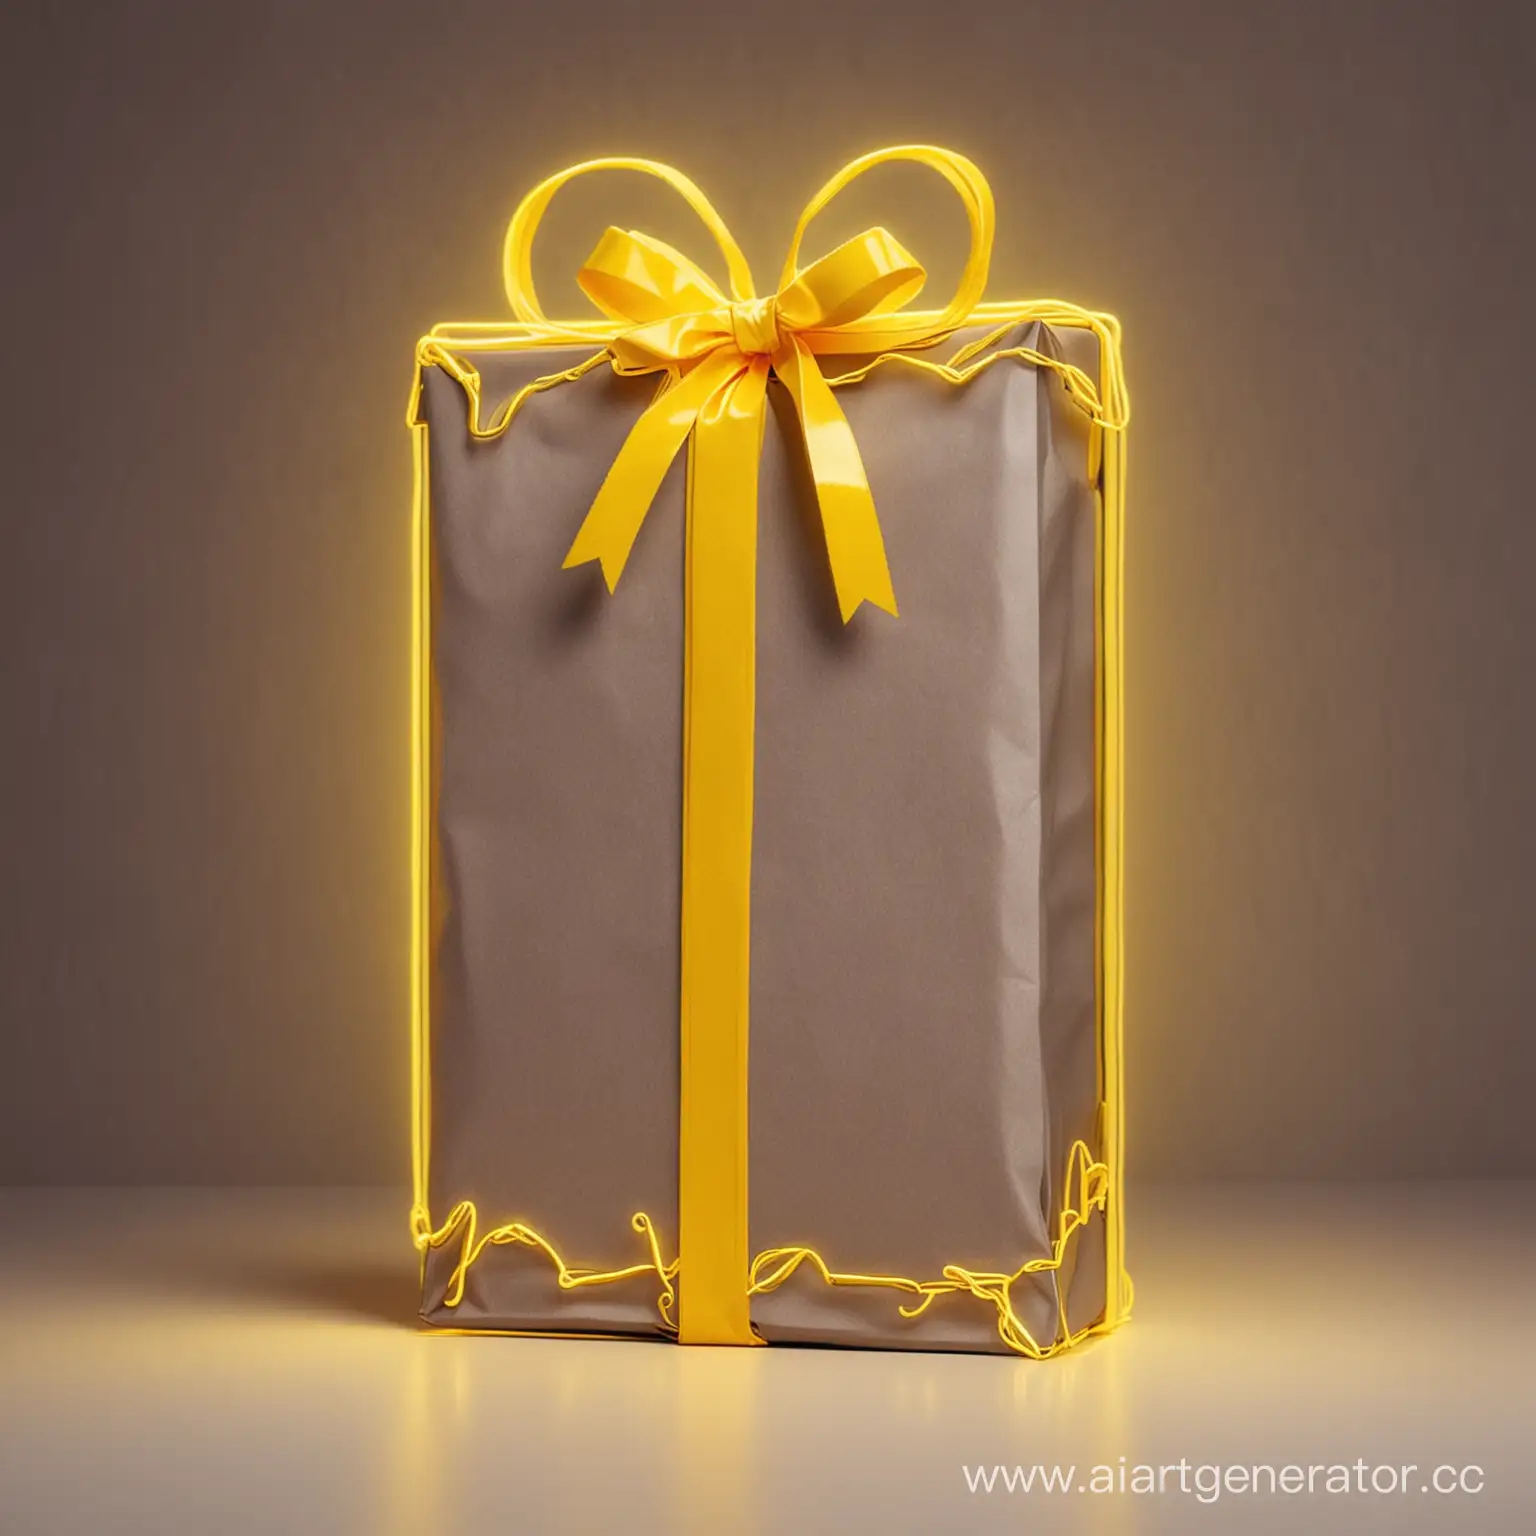 Необходимо отразить подарочное игровое время  с подарком, на фоне желтого неона